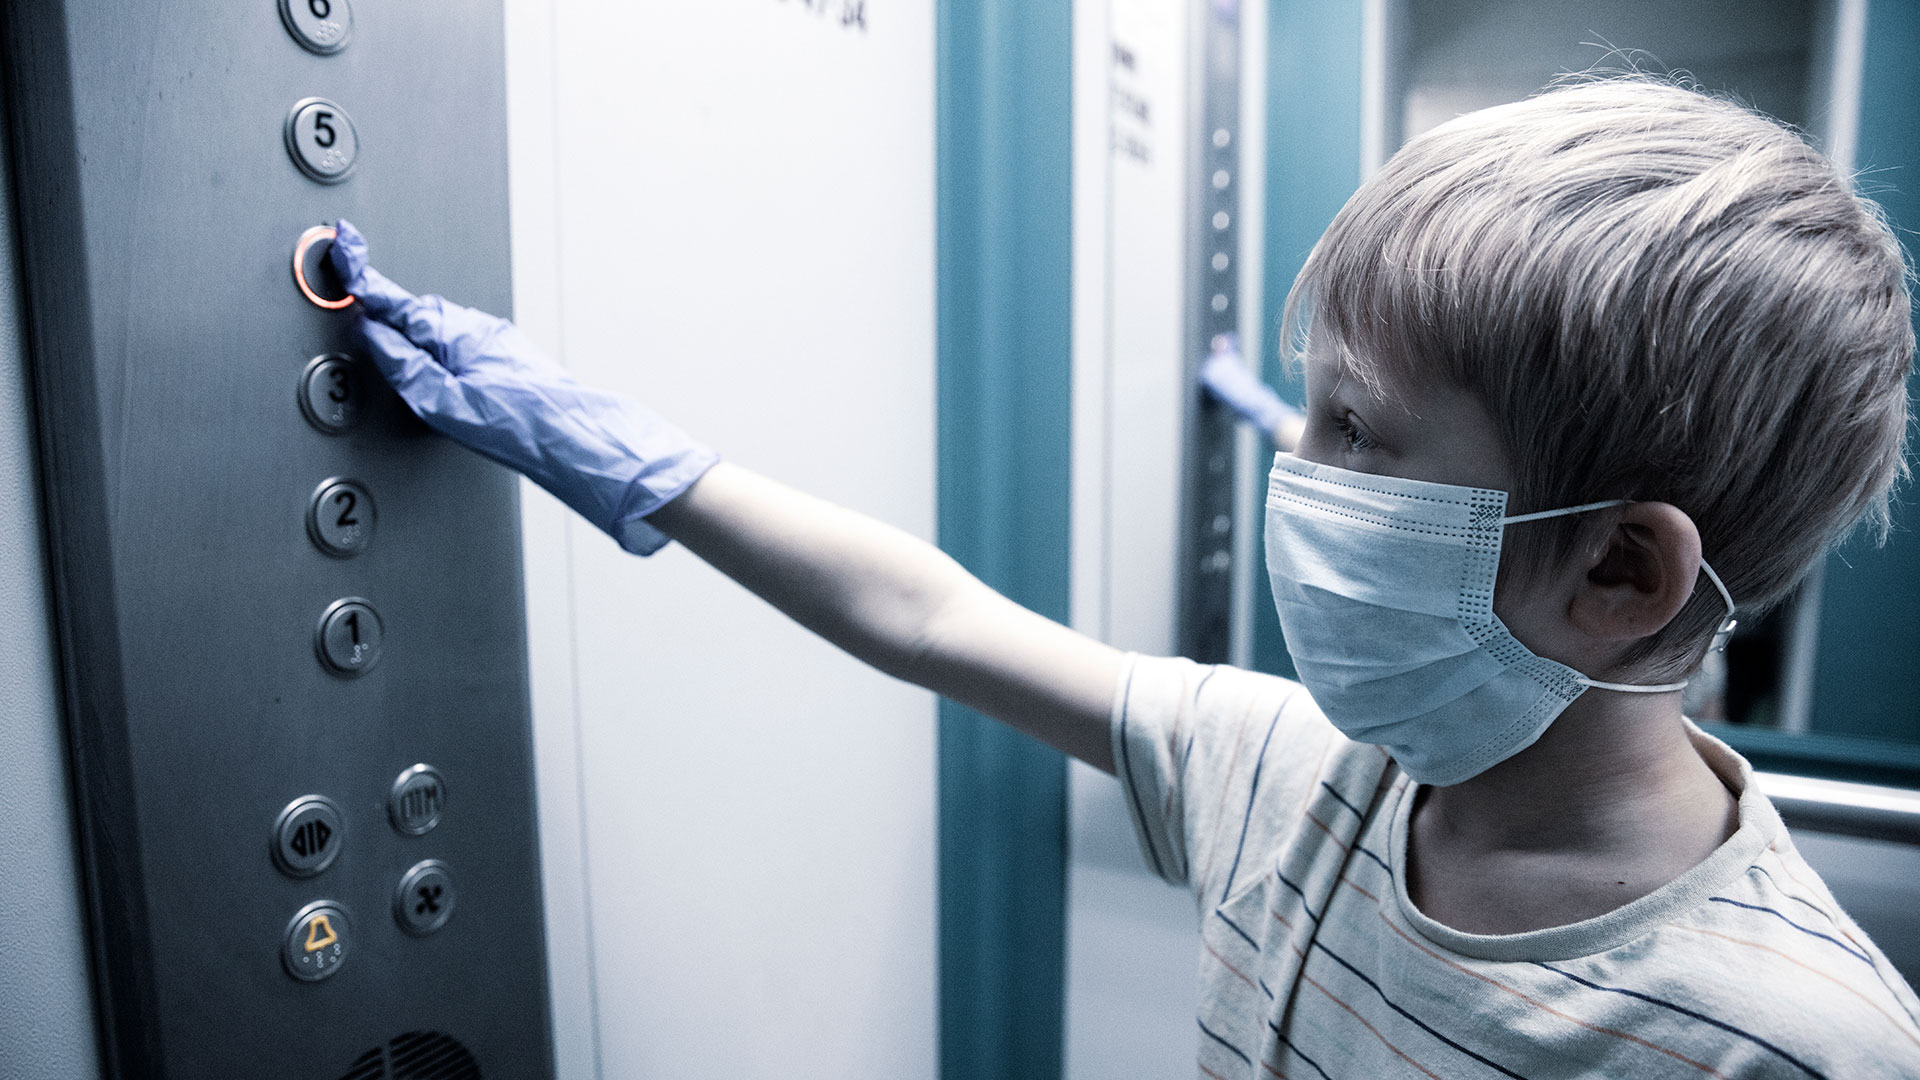 Extremar cuidados para evitar contagios fue una de las lecciones que todos debimos aprender (Getty Images)